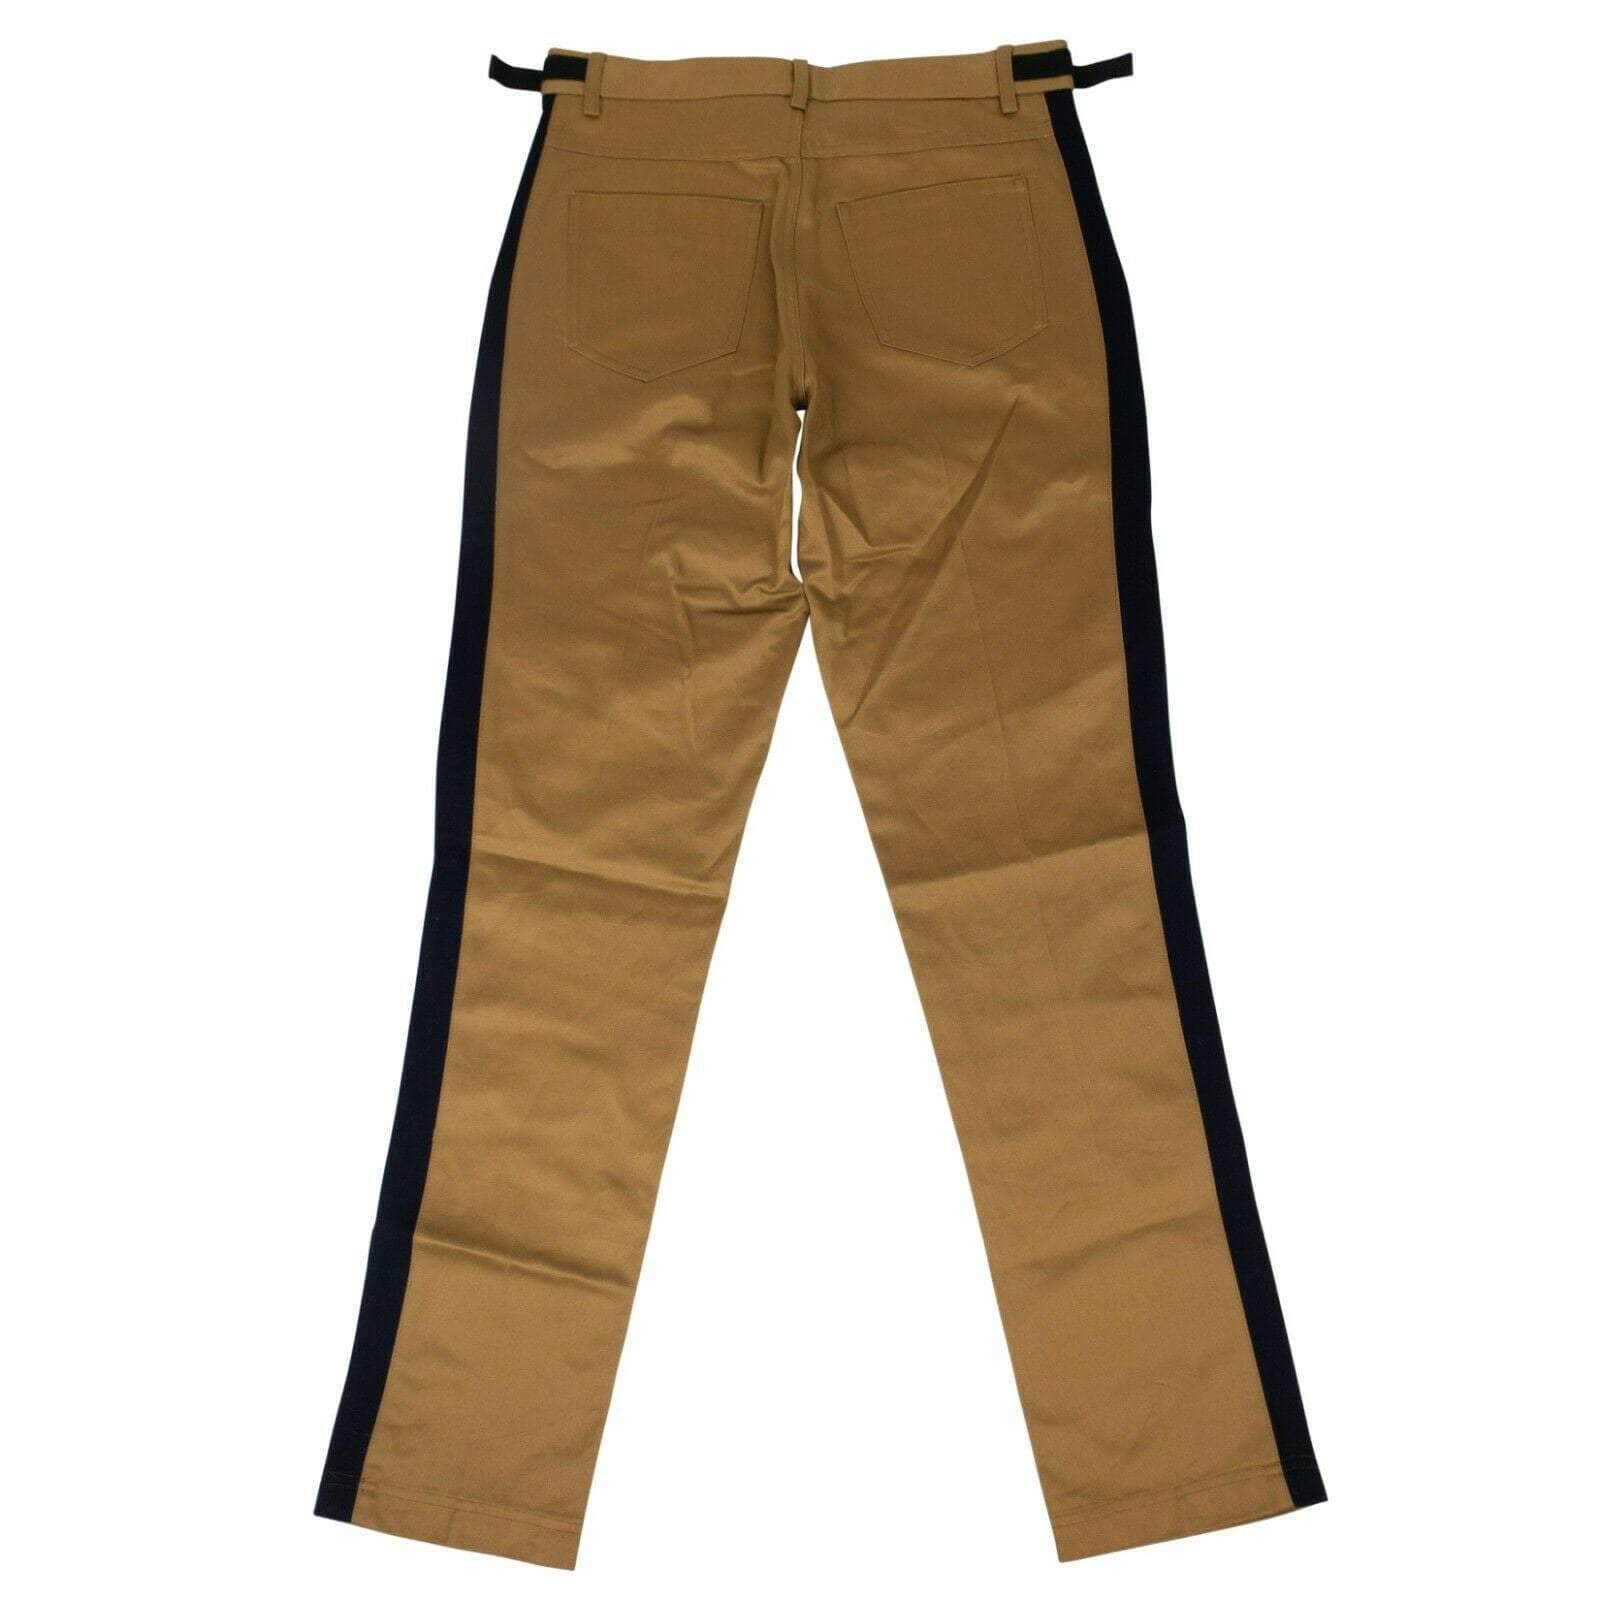 TIM COPPENS Men's Pants M Cotton Chino Pants - Camel 80ST-TC-1144/M 80ST-TC-1144/M